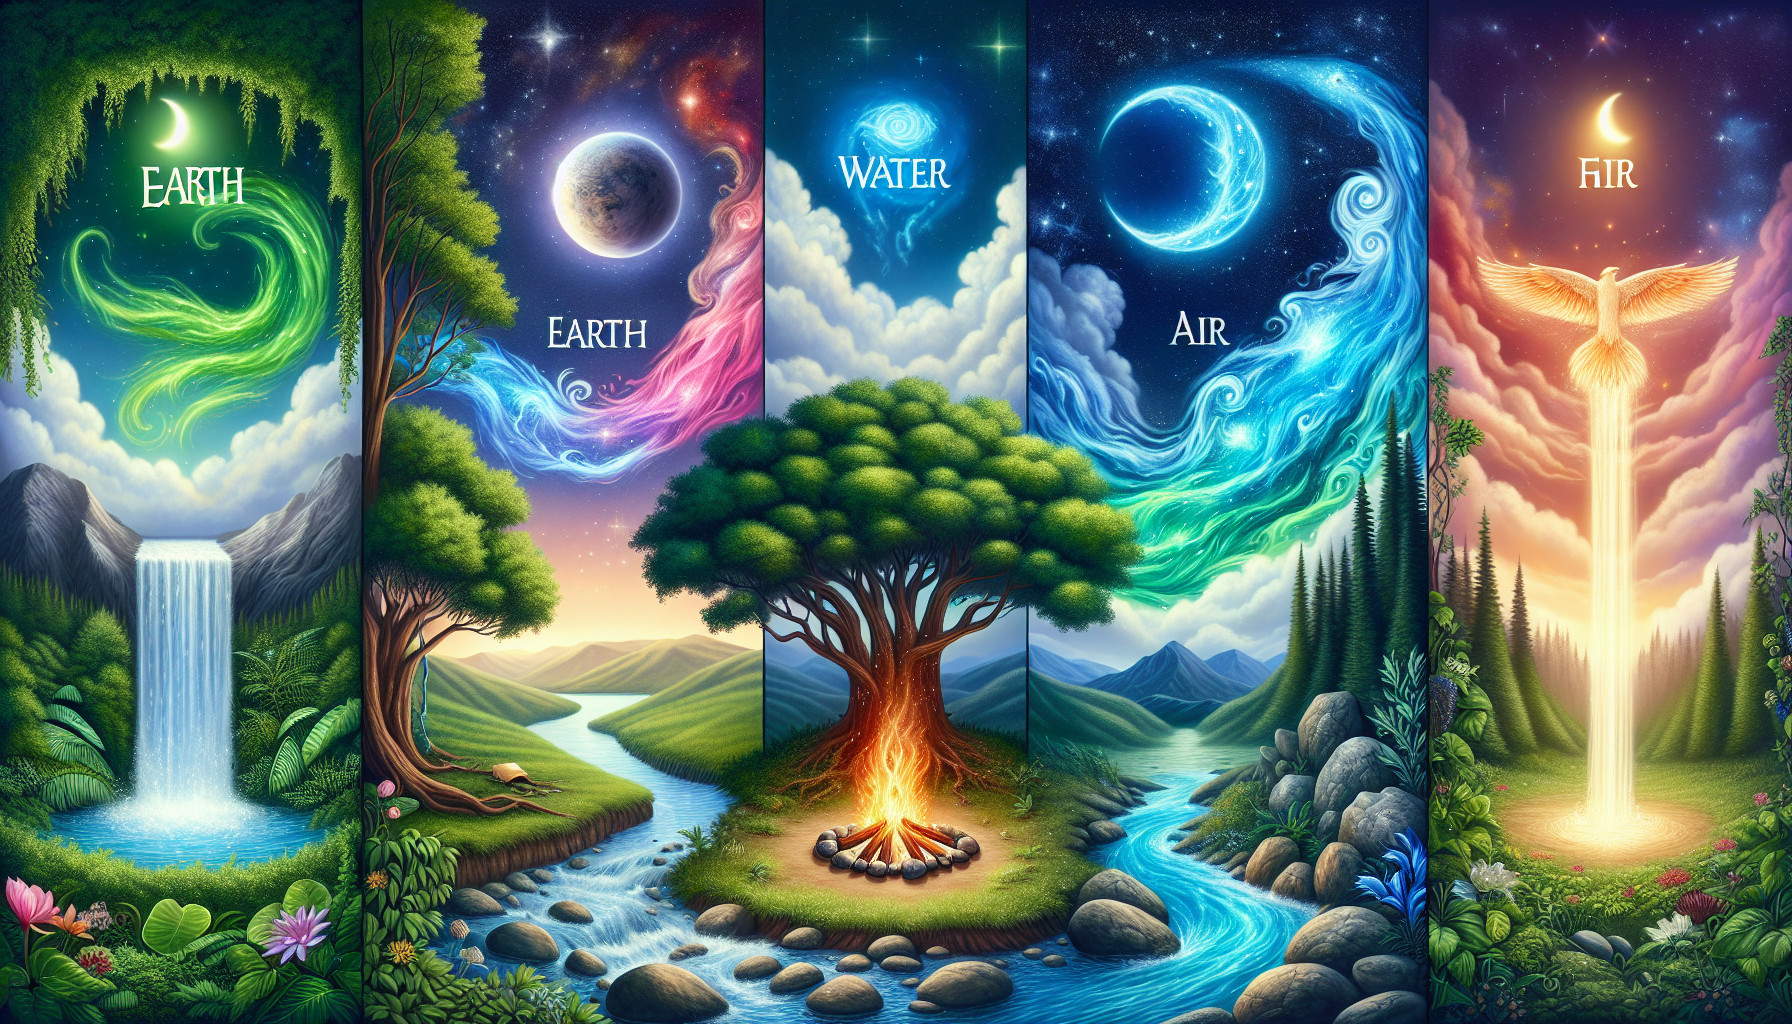 La Espiritualidad Y La Conexión Con Los Elementos: Tierra, Agua, Fuego, Aire Y éter